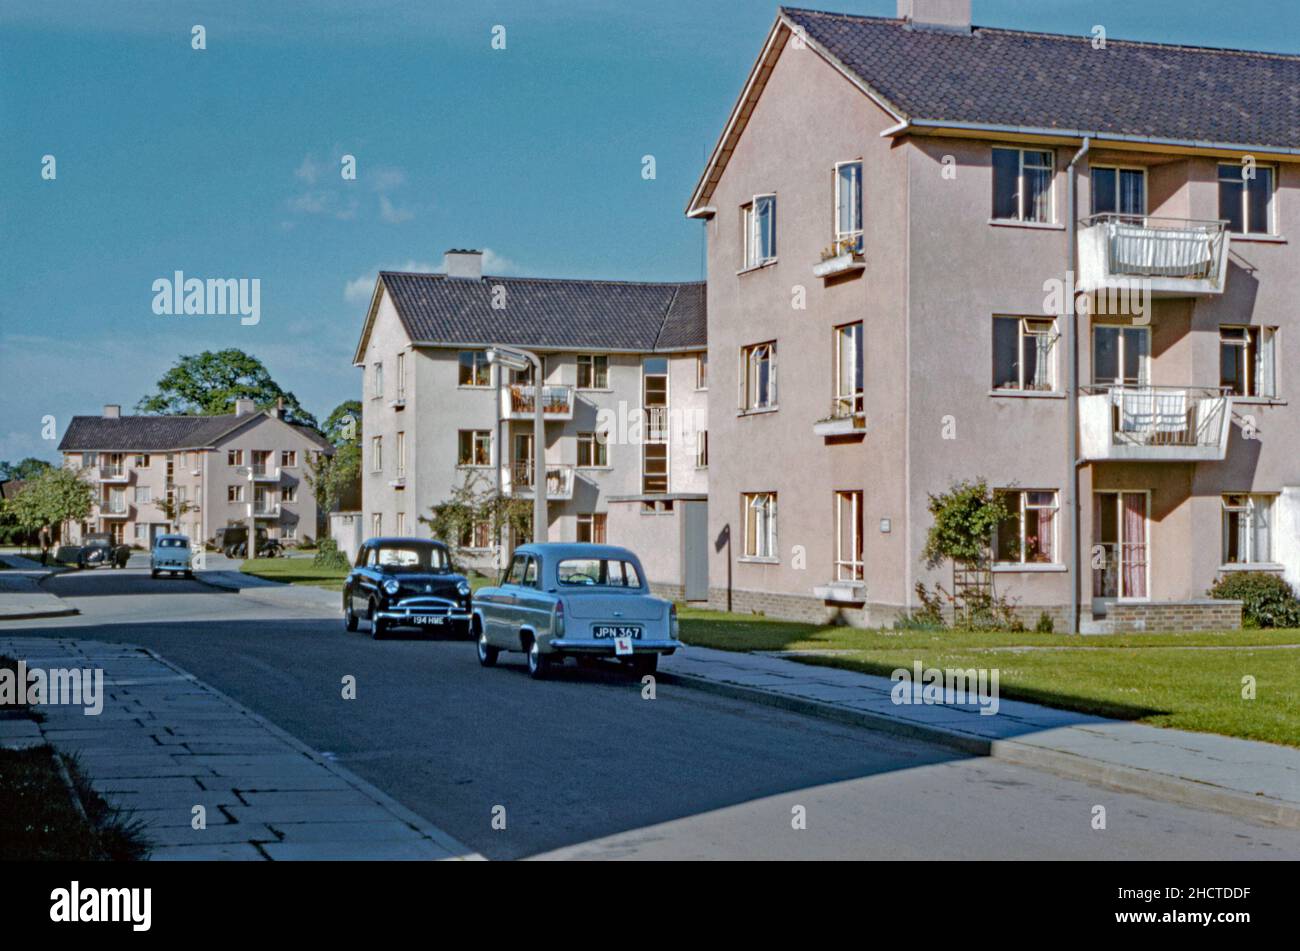 Blocs d'appartements de trois étages à Sunnymead, dans la zone West Green de Crawley 'New Town', West Sussex, Angleterre, Royaume-Uni en 1960s.Le quartier, juste à l'ouest du centre-ville, était l'une des 14 banlieues développées pour créer la nouvelle ville d'après-guerre.Après la Seconde Guerre mondiale, afin de relocaliser ceux qui vivent dans des logements pauvres ou bombardés à Londres, un grand nombre de personnes et d'emplois ont été déplacés dans de nouvelles villes autour de la se Angleterre et Crawley en était une : une photographie vintage de 1960s. Banque D'Images